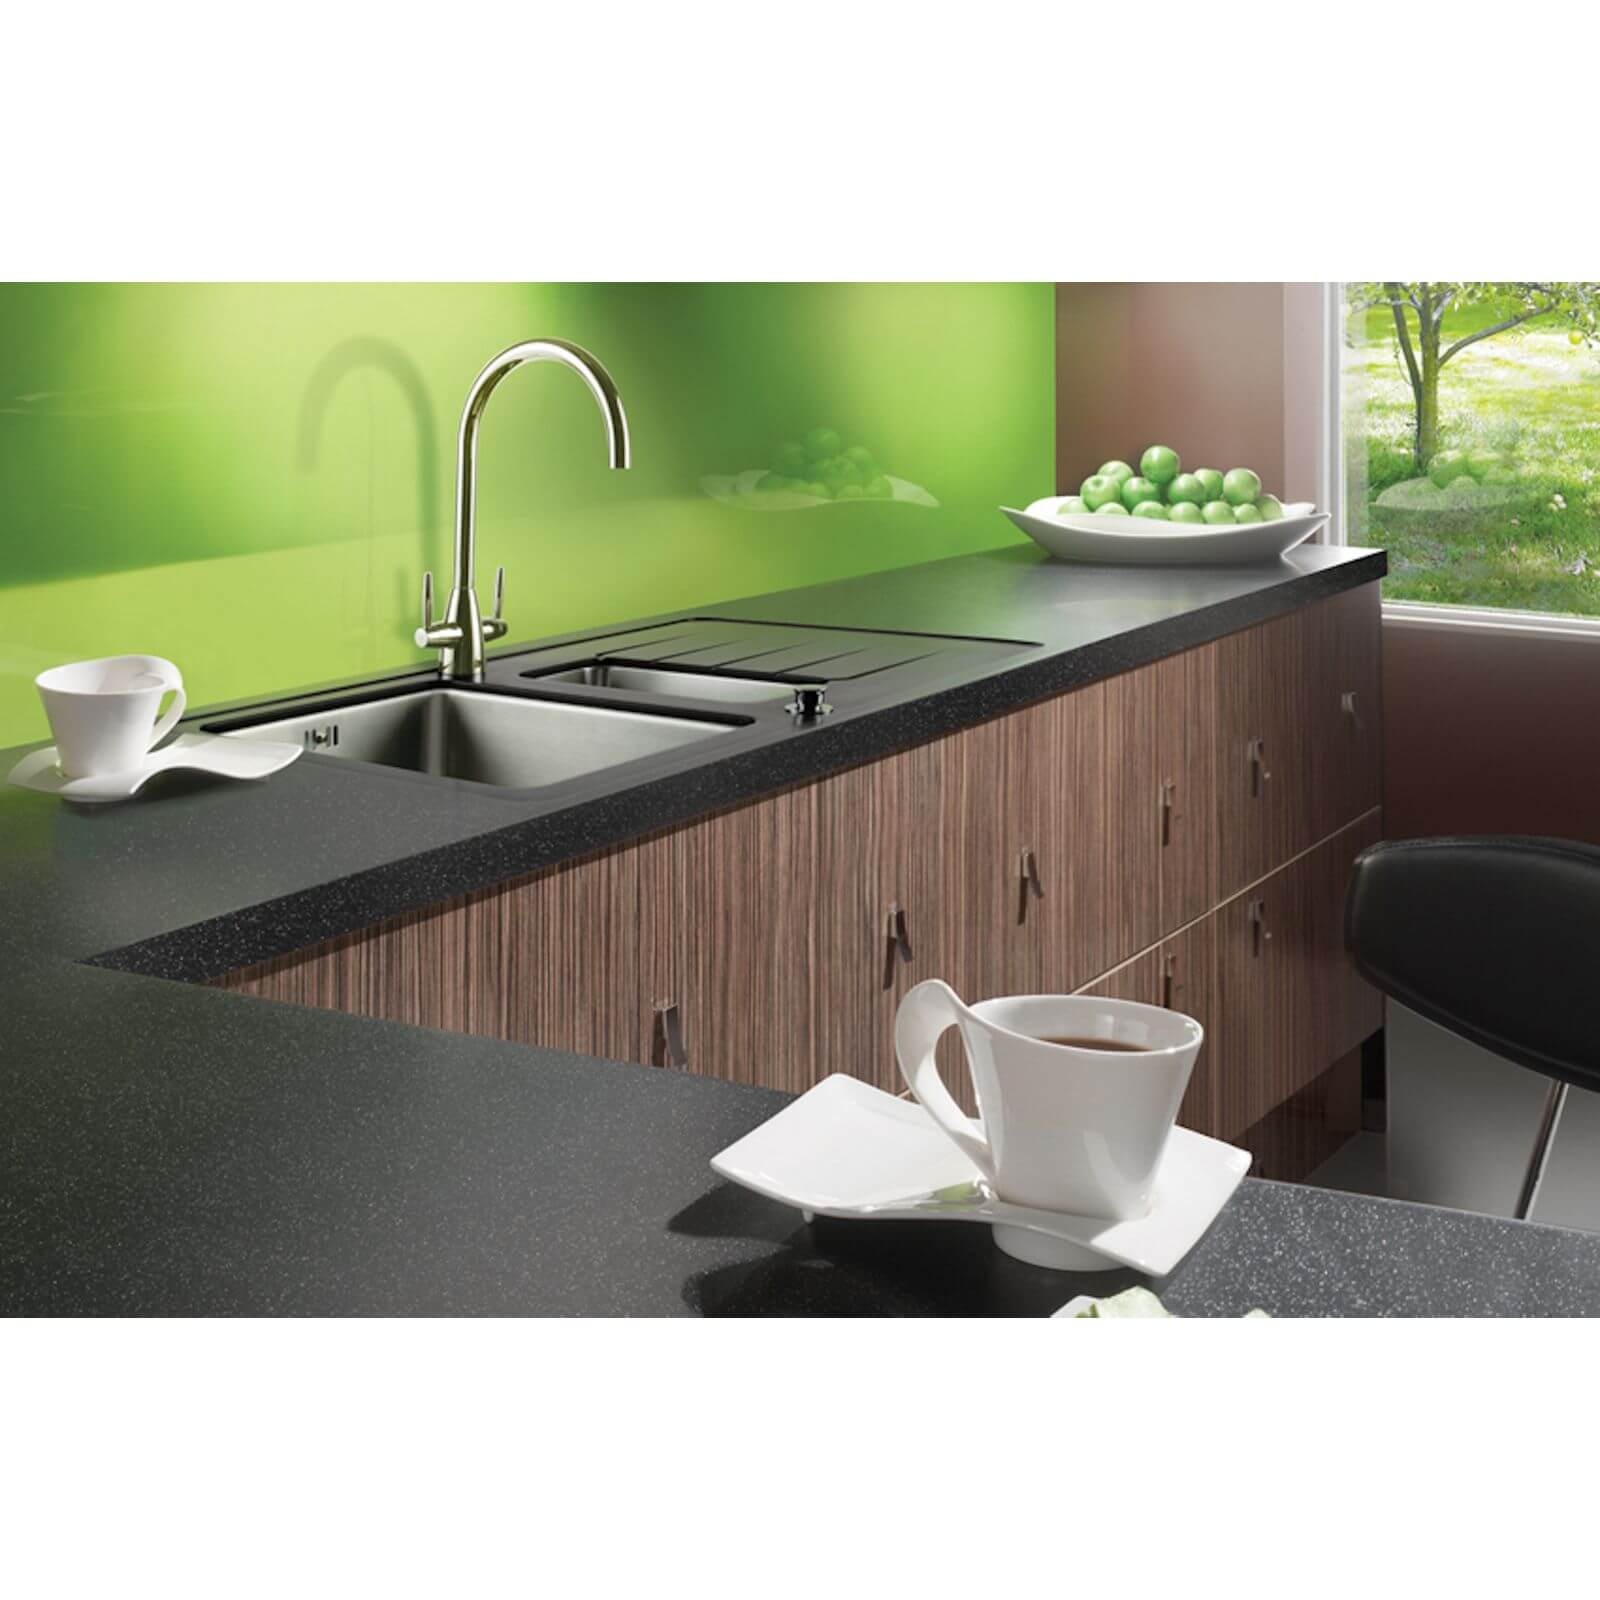 Maia Galaxy Kitchen Worktop - 360 x 65 x 2.8cm